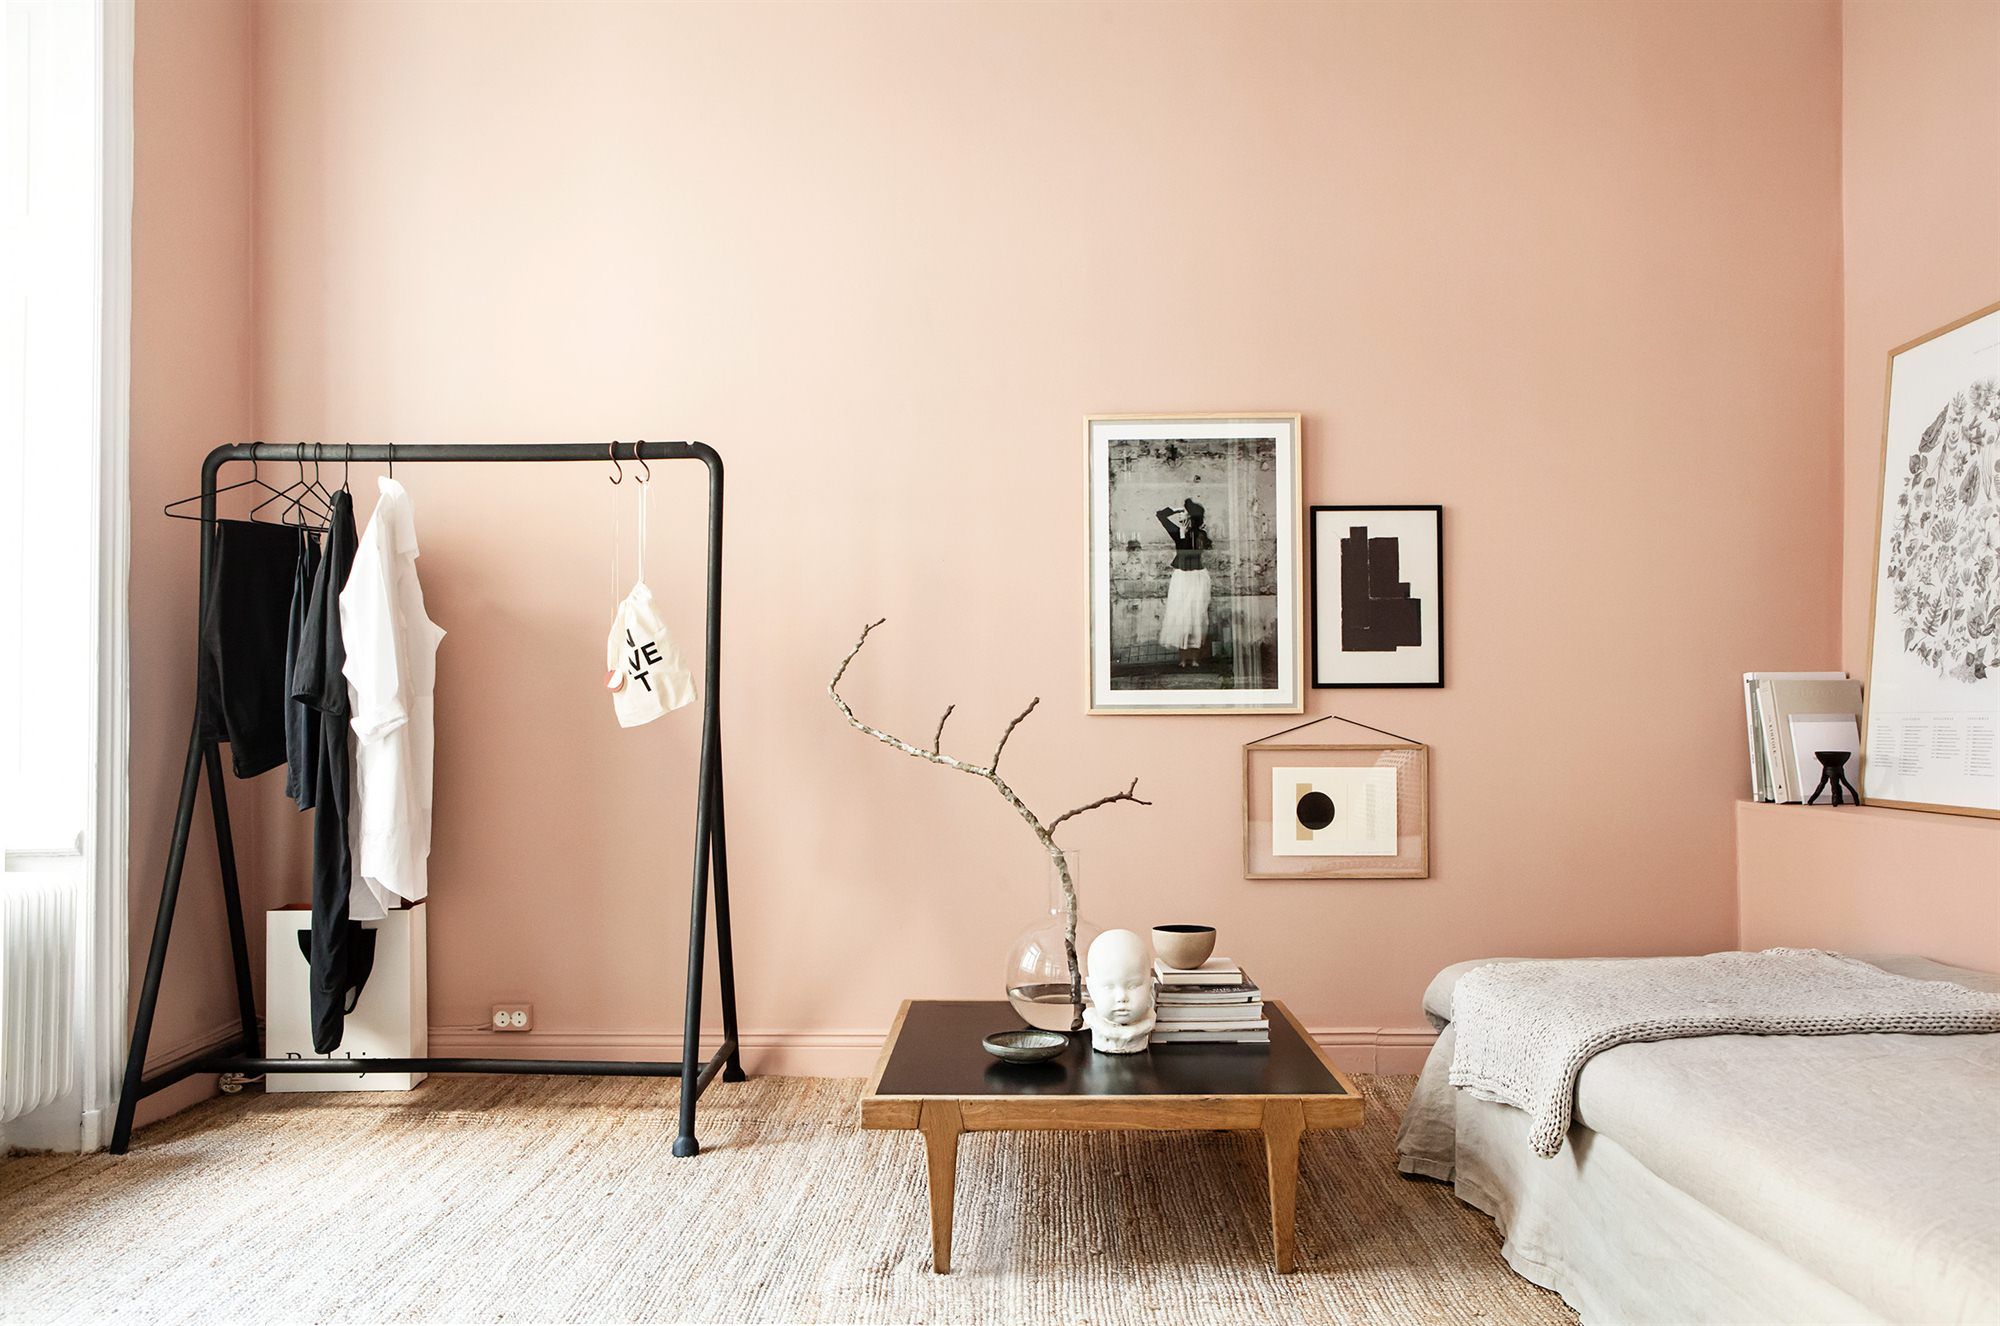 Phòng ngủ màu hồng cam đào với các món đồ trang trí rất nghệ thuật